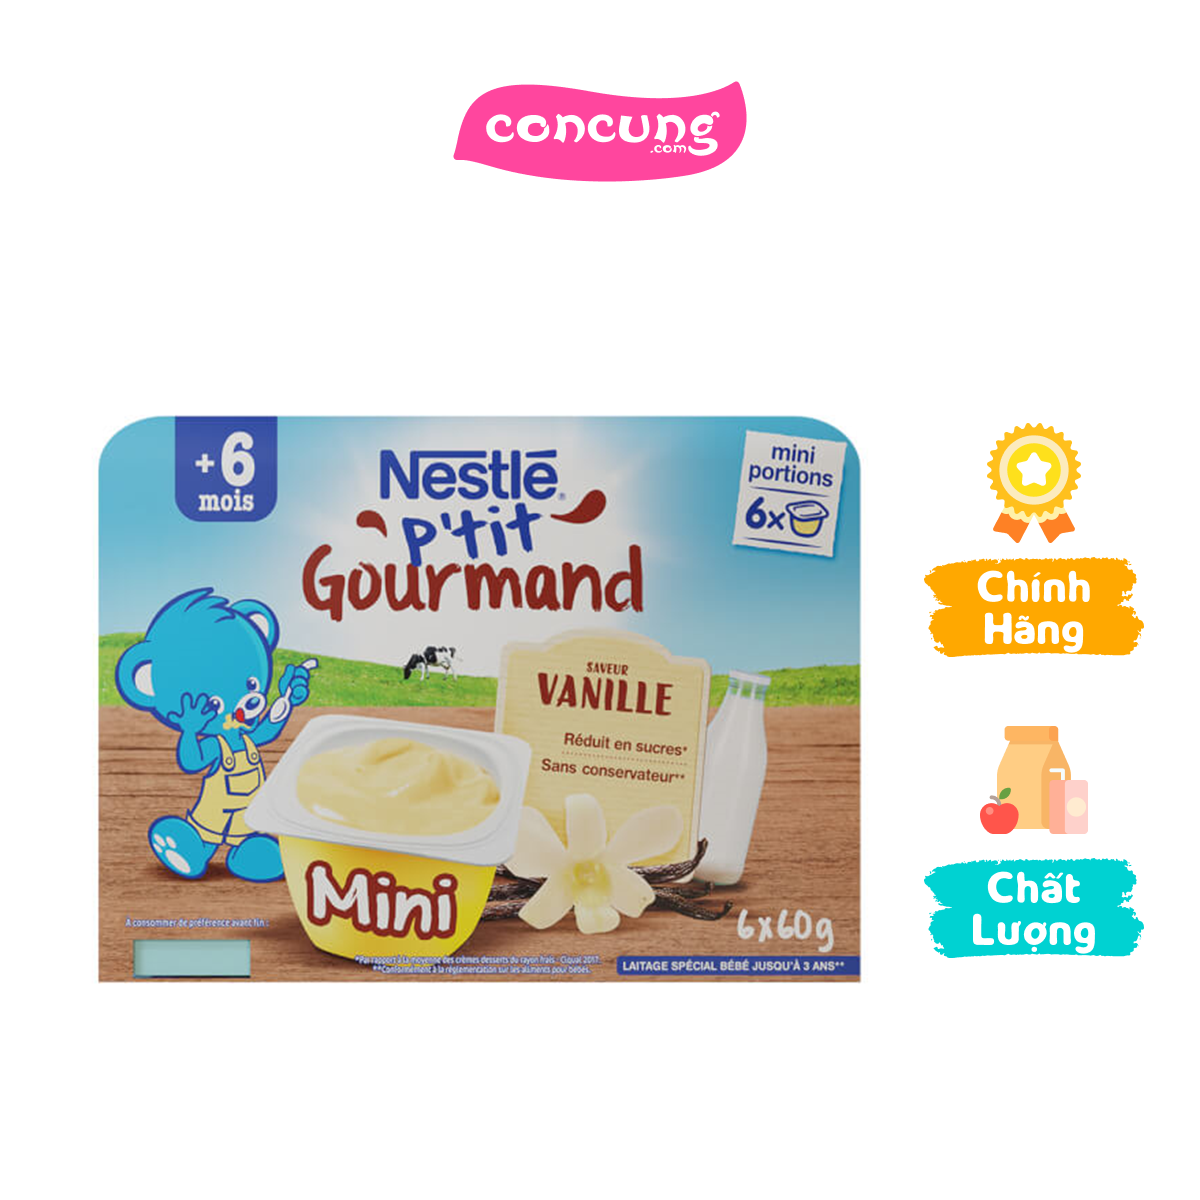 Váng sữa Nestlé P&apos tit Gourmand vị Vani